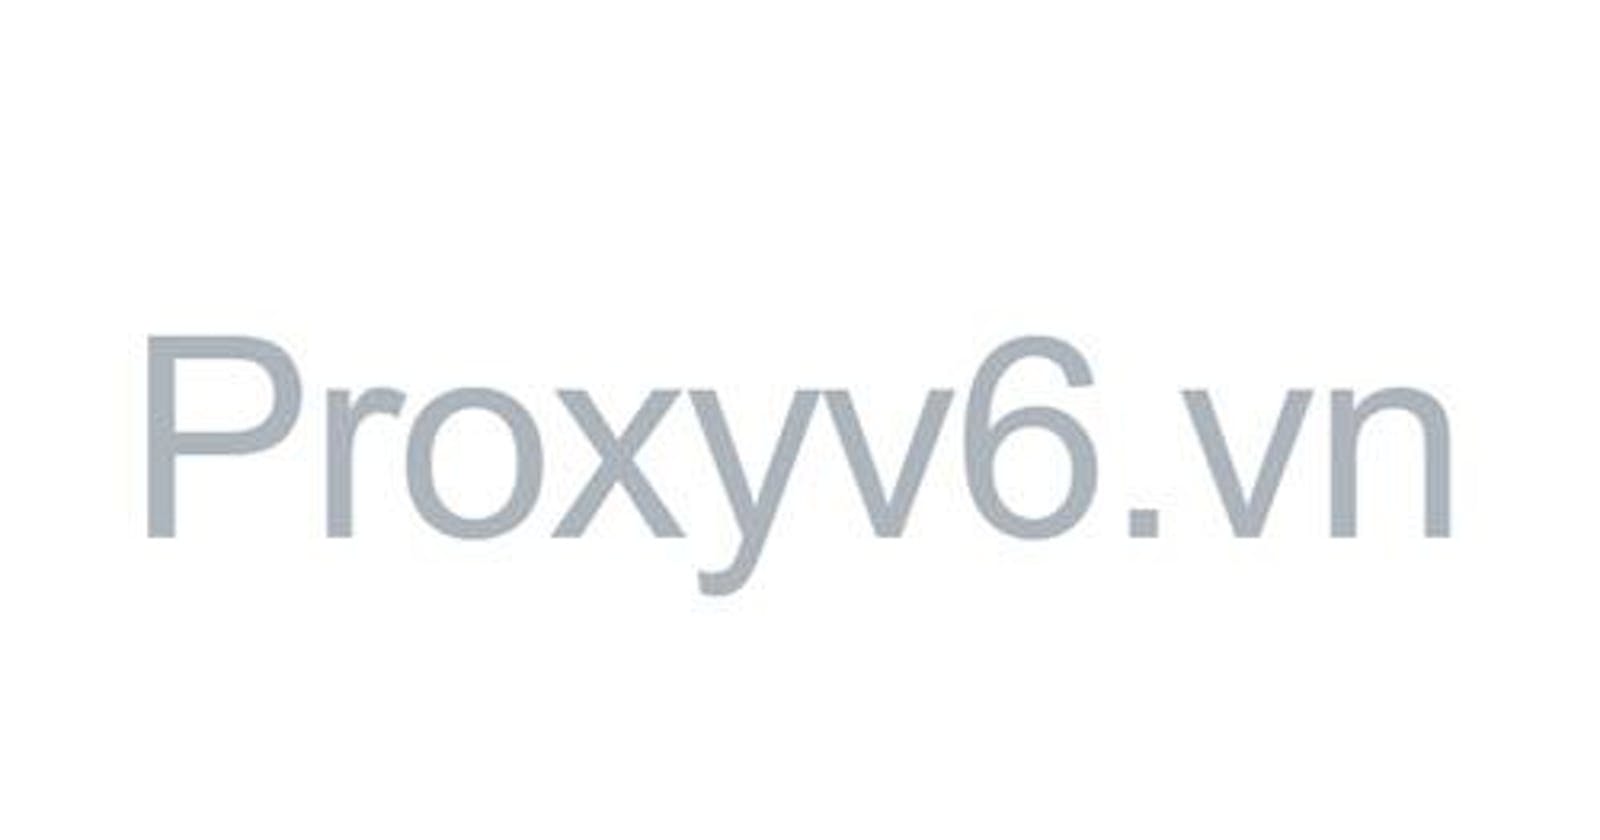 Proxyv6.vn - Proxy IPv6 Việt Nam, USA, UK, Singapore, đa quốc gia